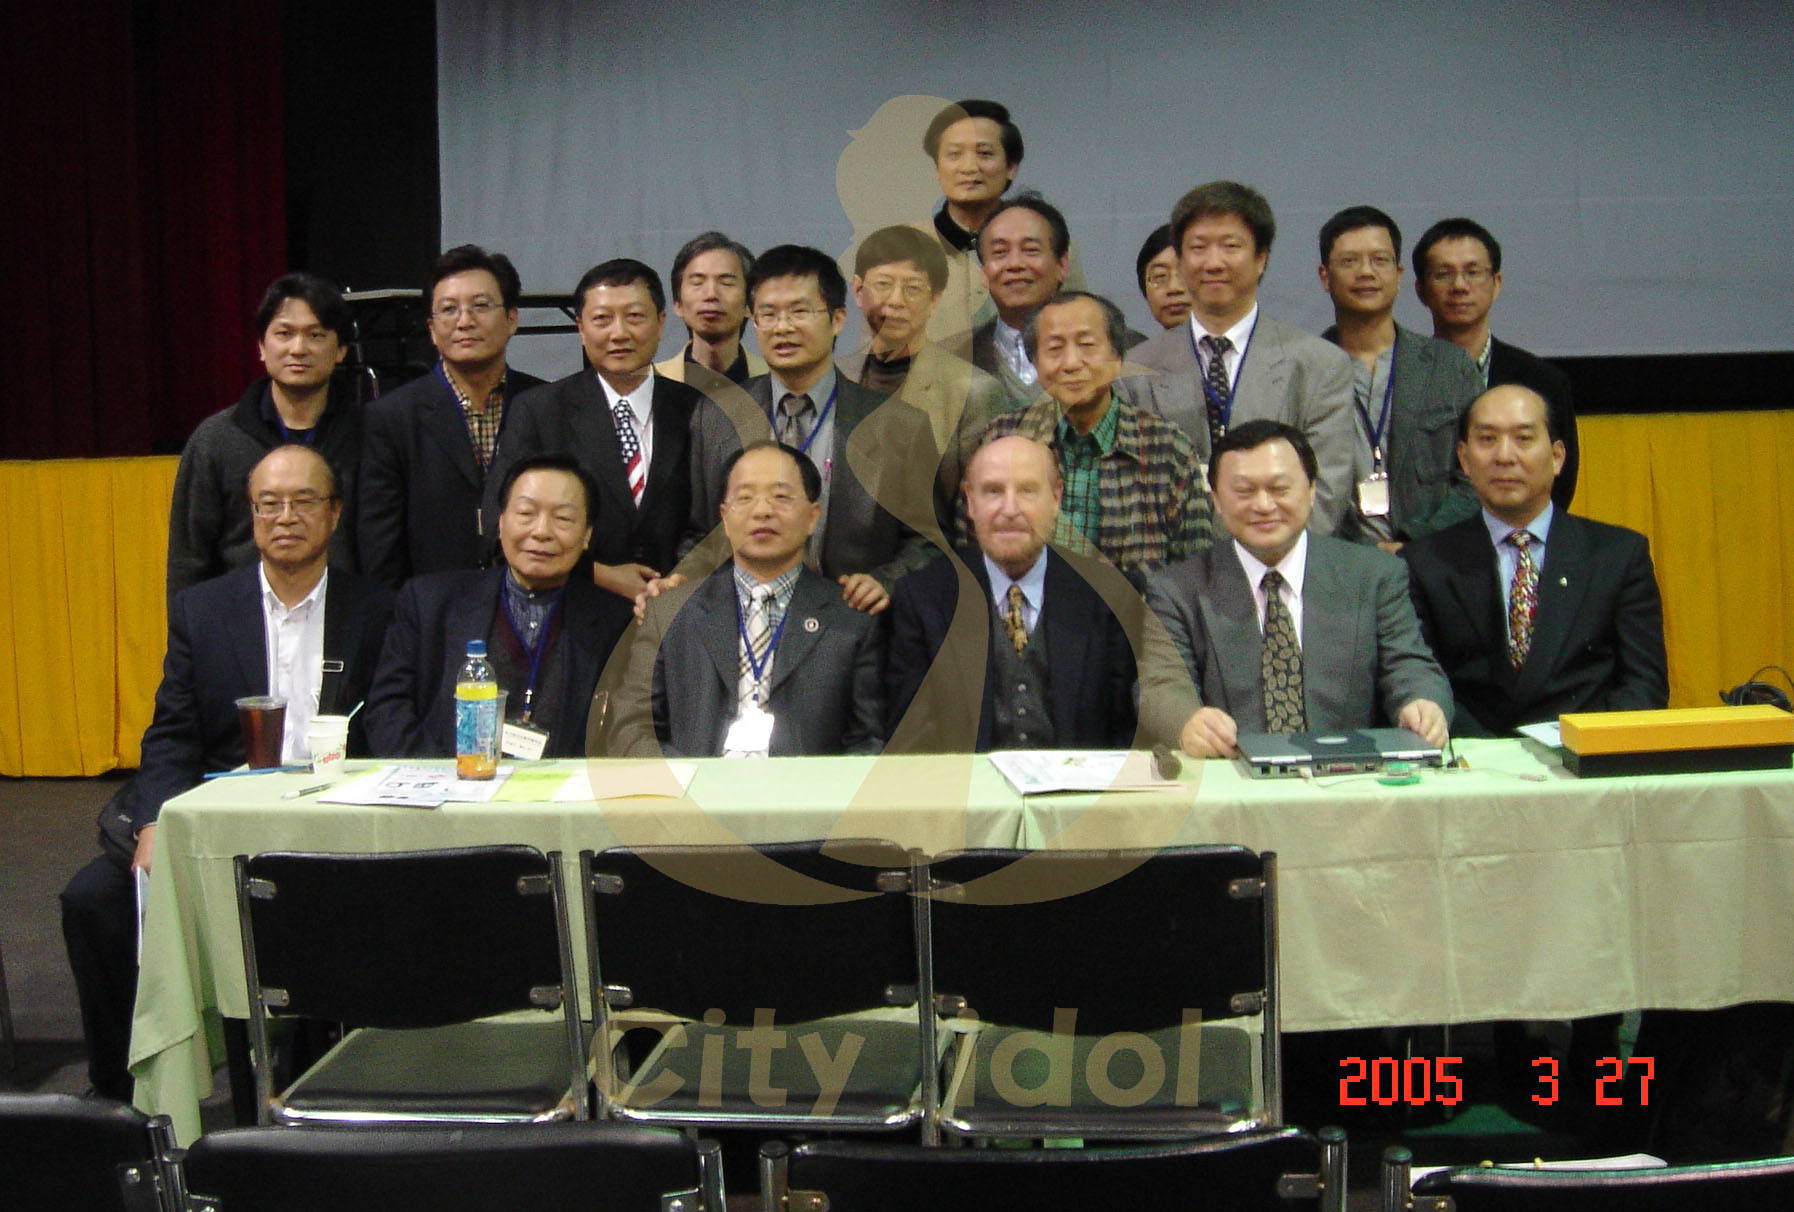 2005-03-27 顏面整形國際會議(台中世貿)